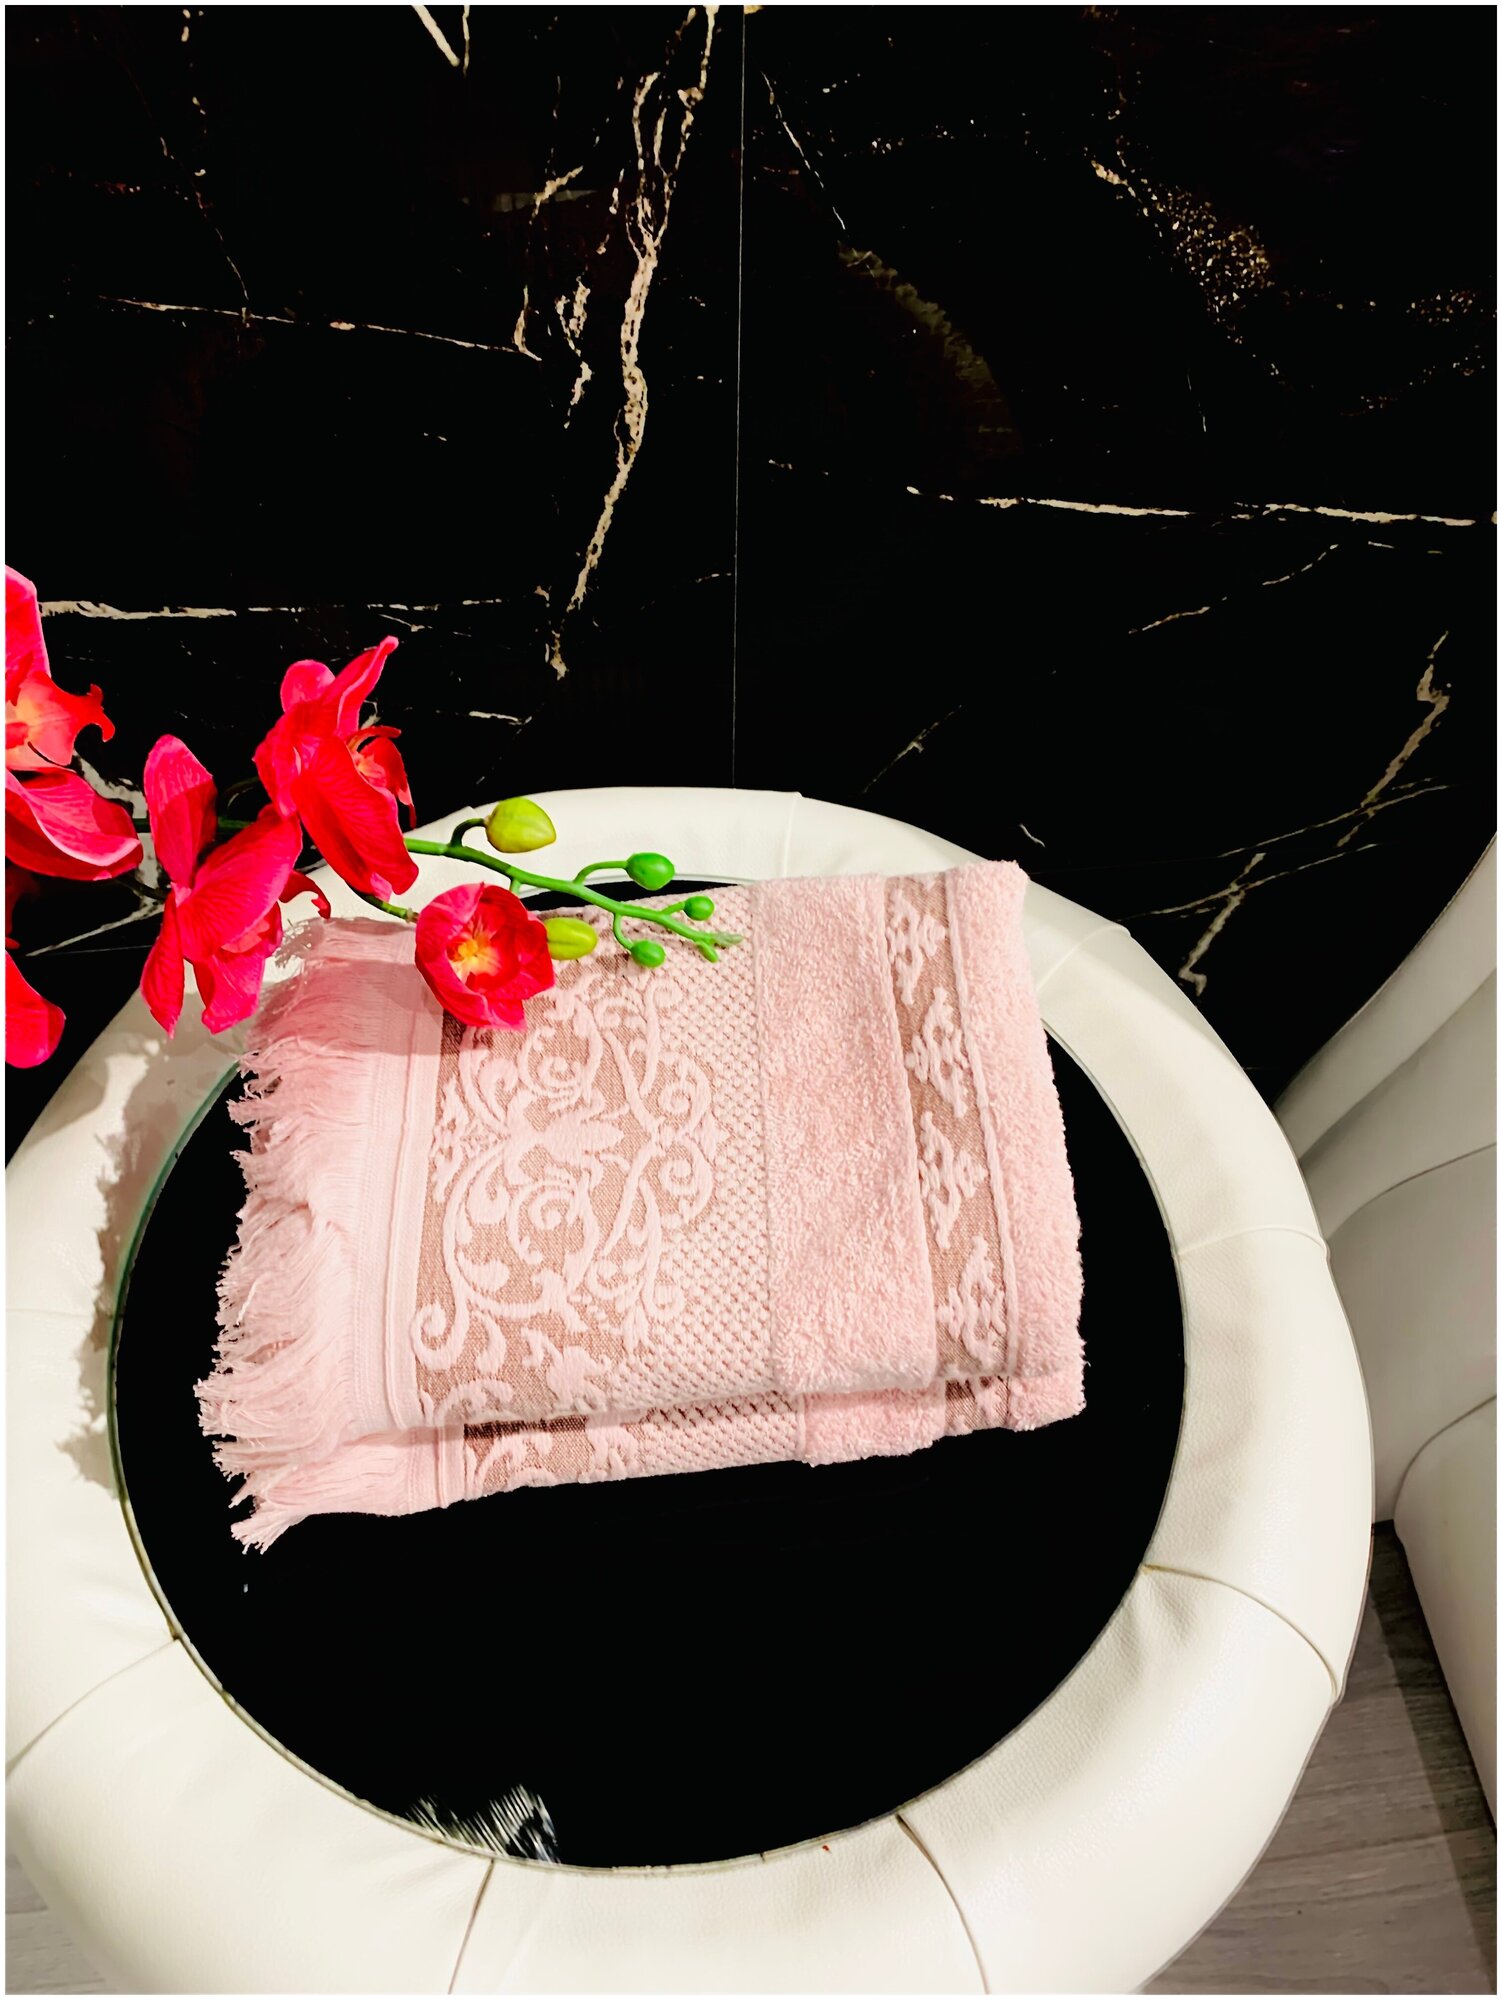 EVRAHOME Турецкие полотенца премиум класса 100% хлопок натуральное без примесей набор 3 шт, подарки на 8 марта - фотография № 7